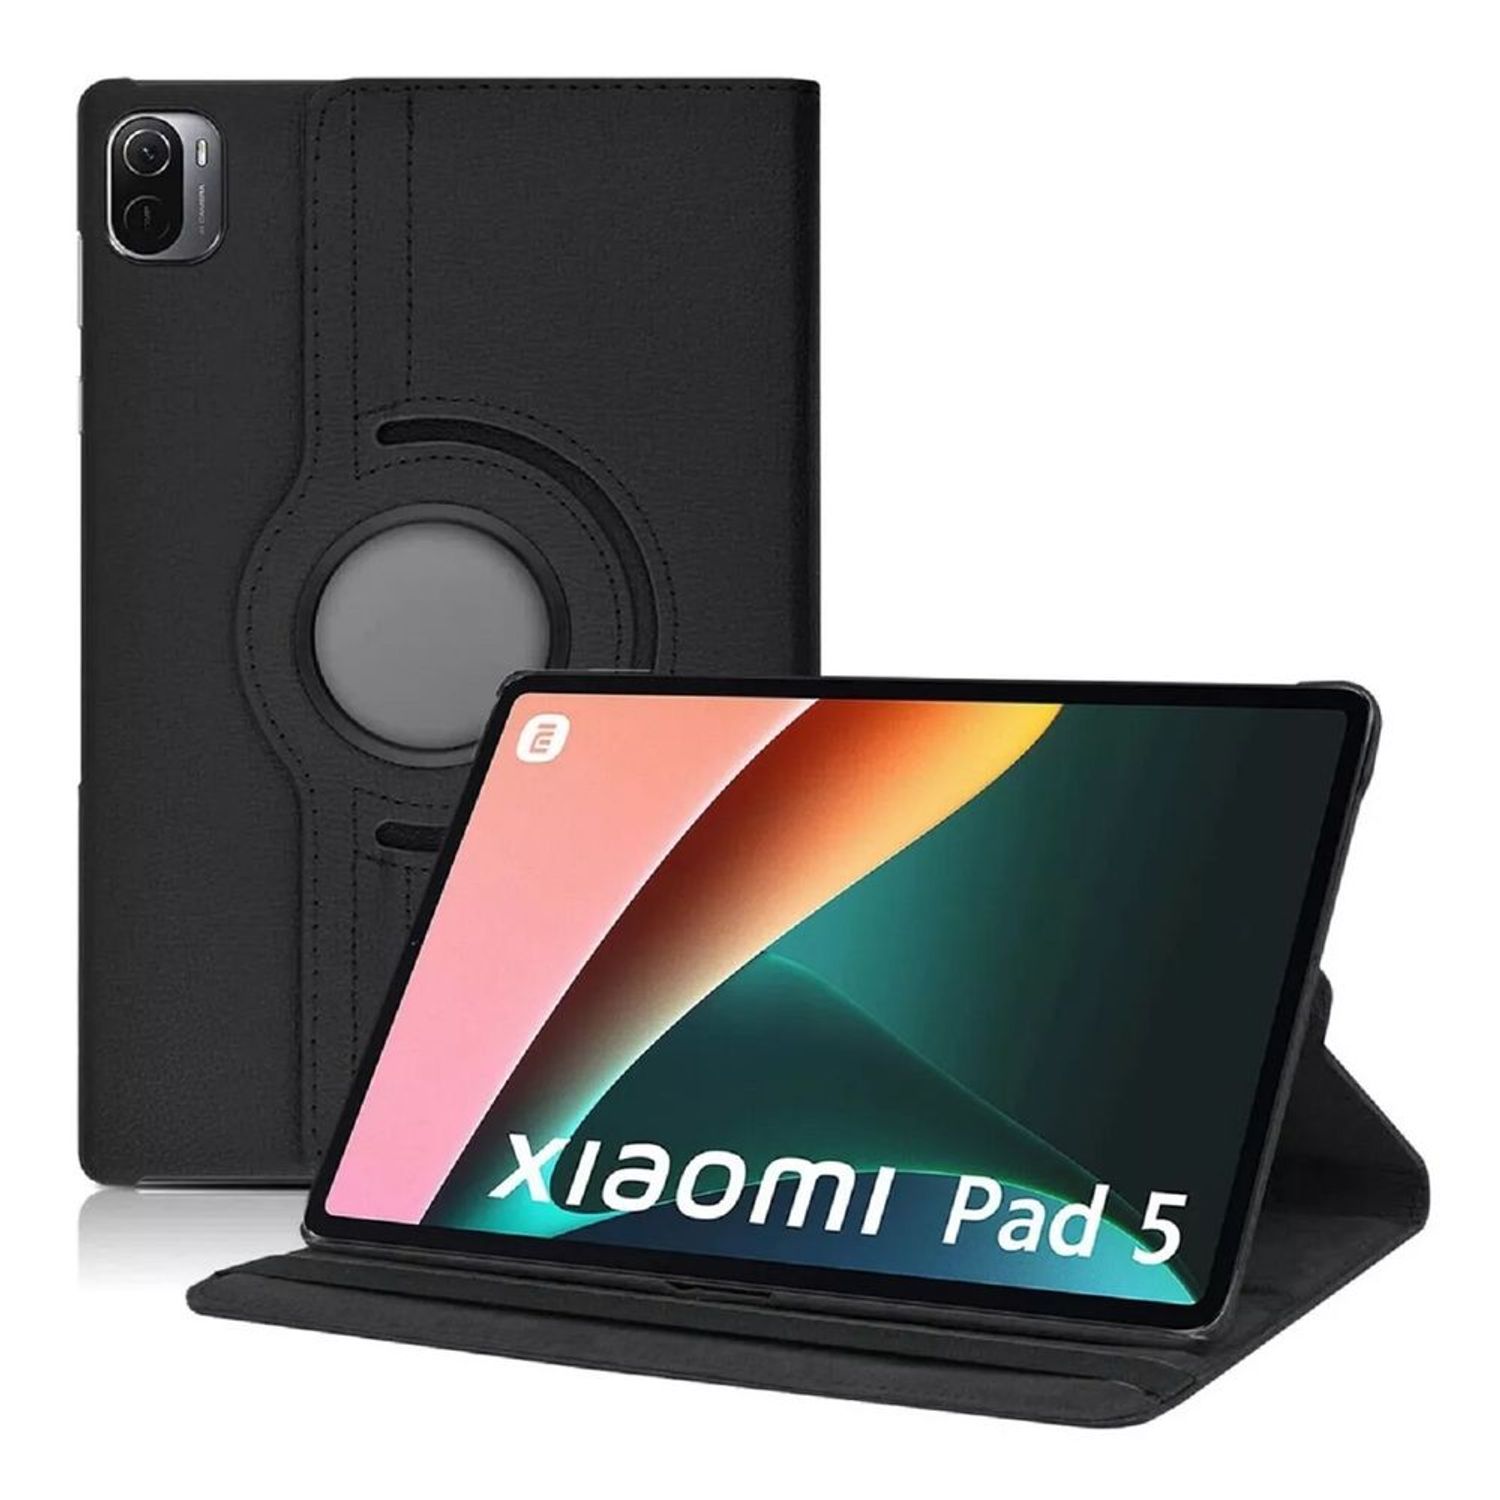 Xiaomi Mi Pad 5 y Mi Pad 5 Pro: características, ficha técnica y